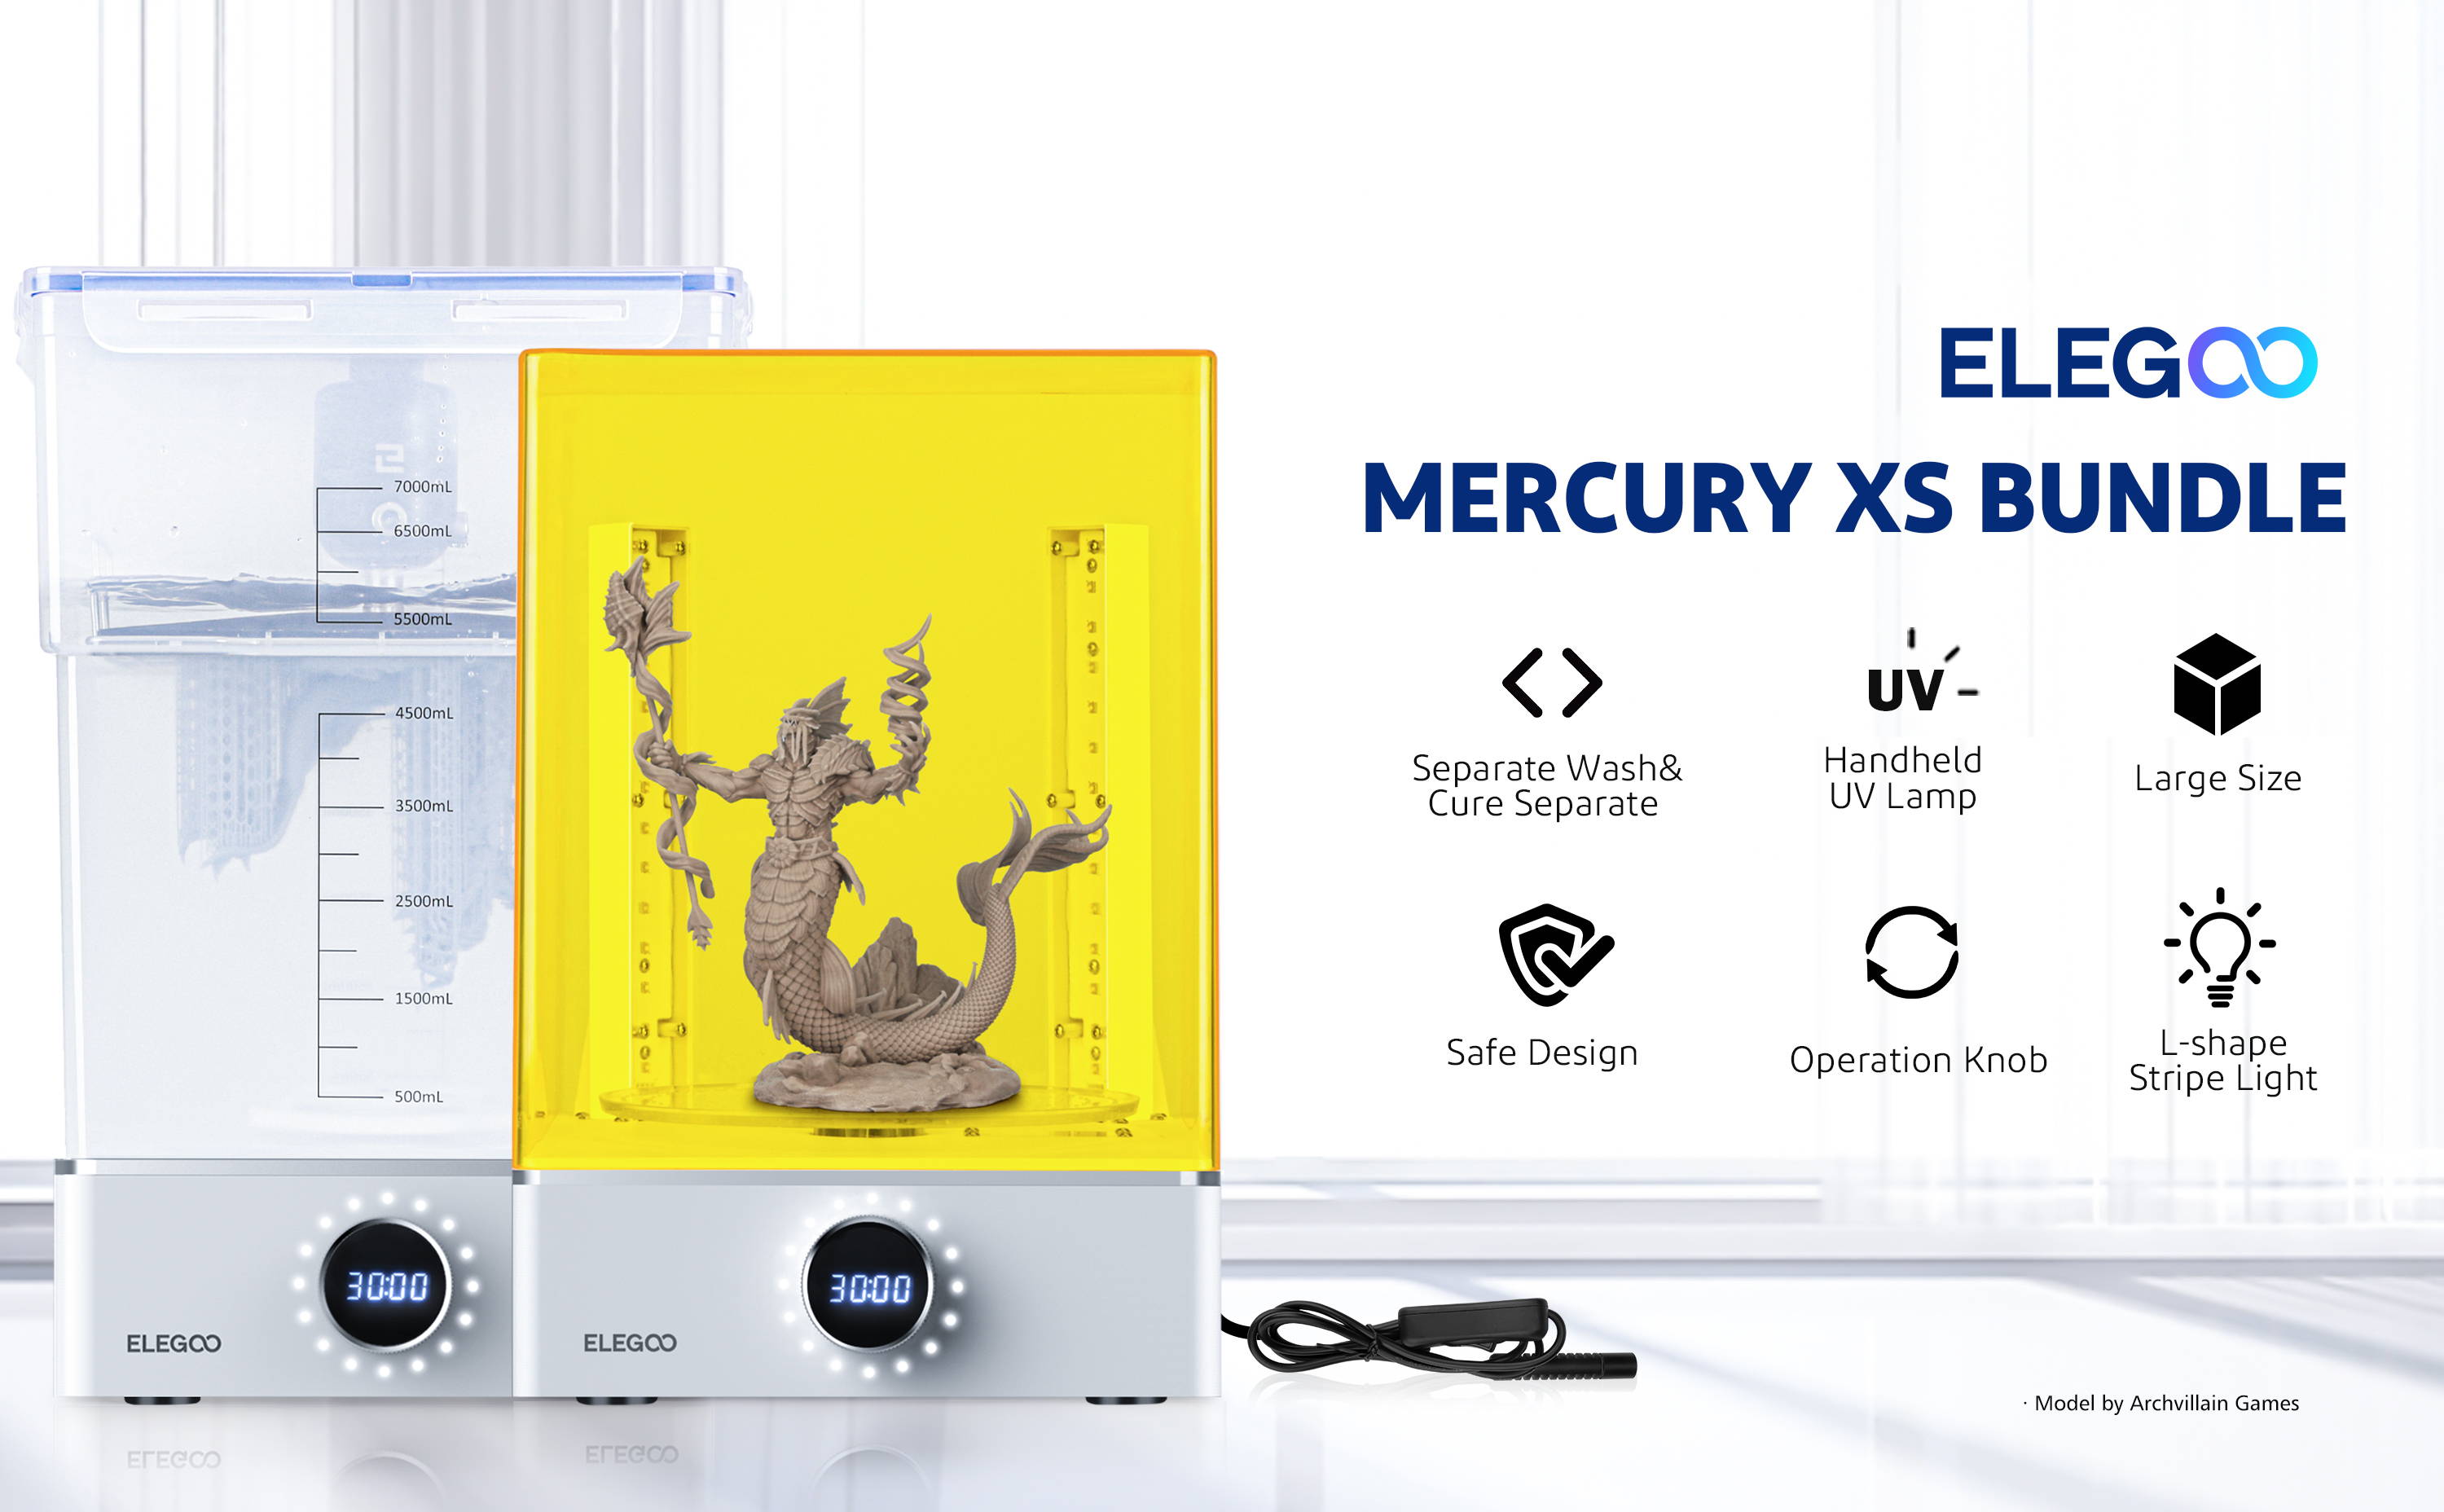 ELEGOO Mercury XS Bundle